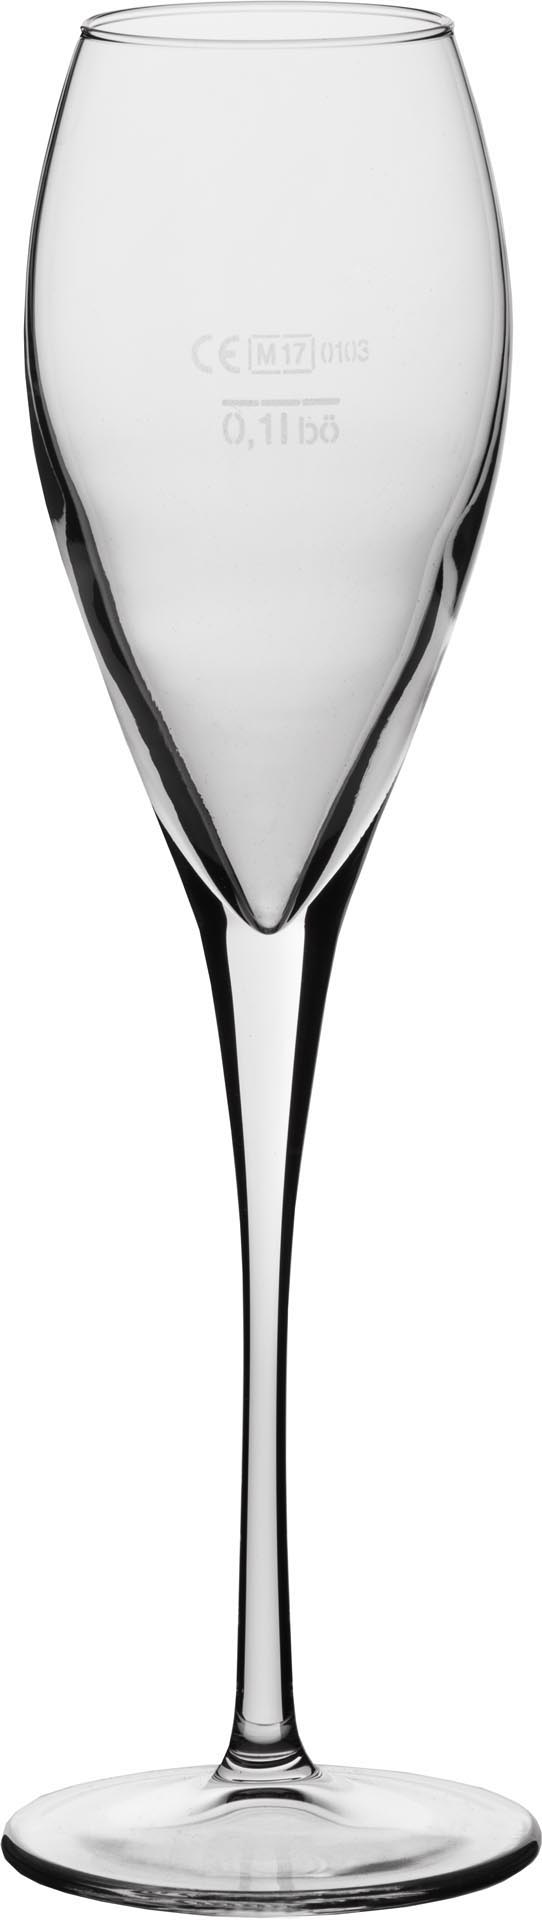 Glasserie "Calice" Champagnerglas 225m S.104